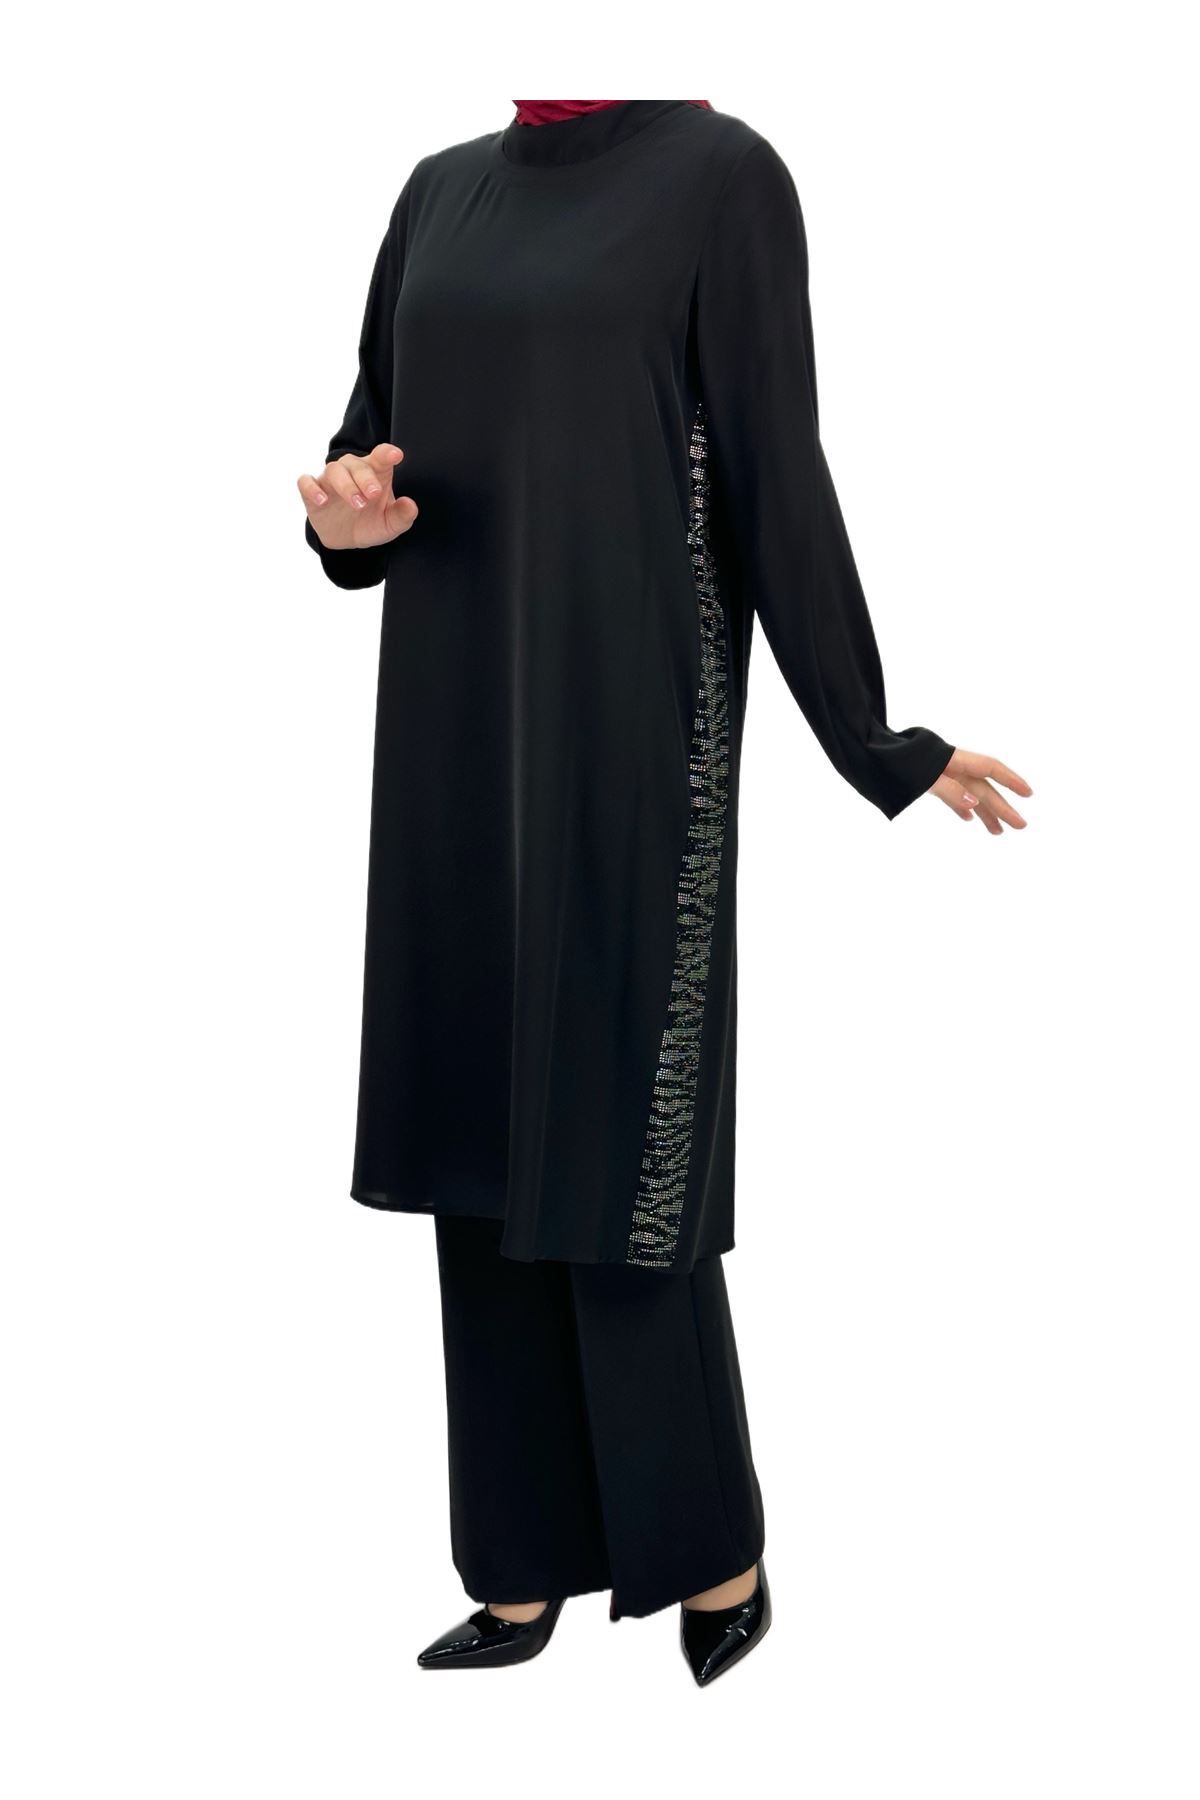 ottoman wear OTW46871 Büyük Beden Şifon Tunik Siyah